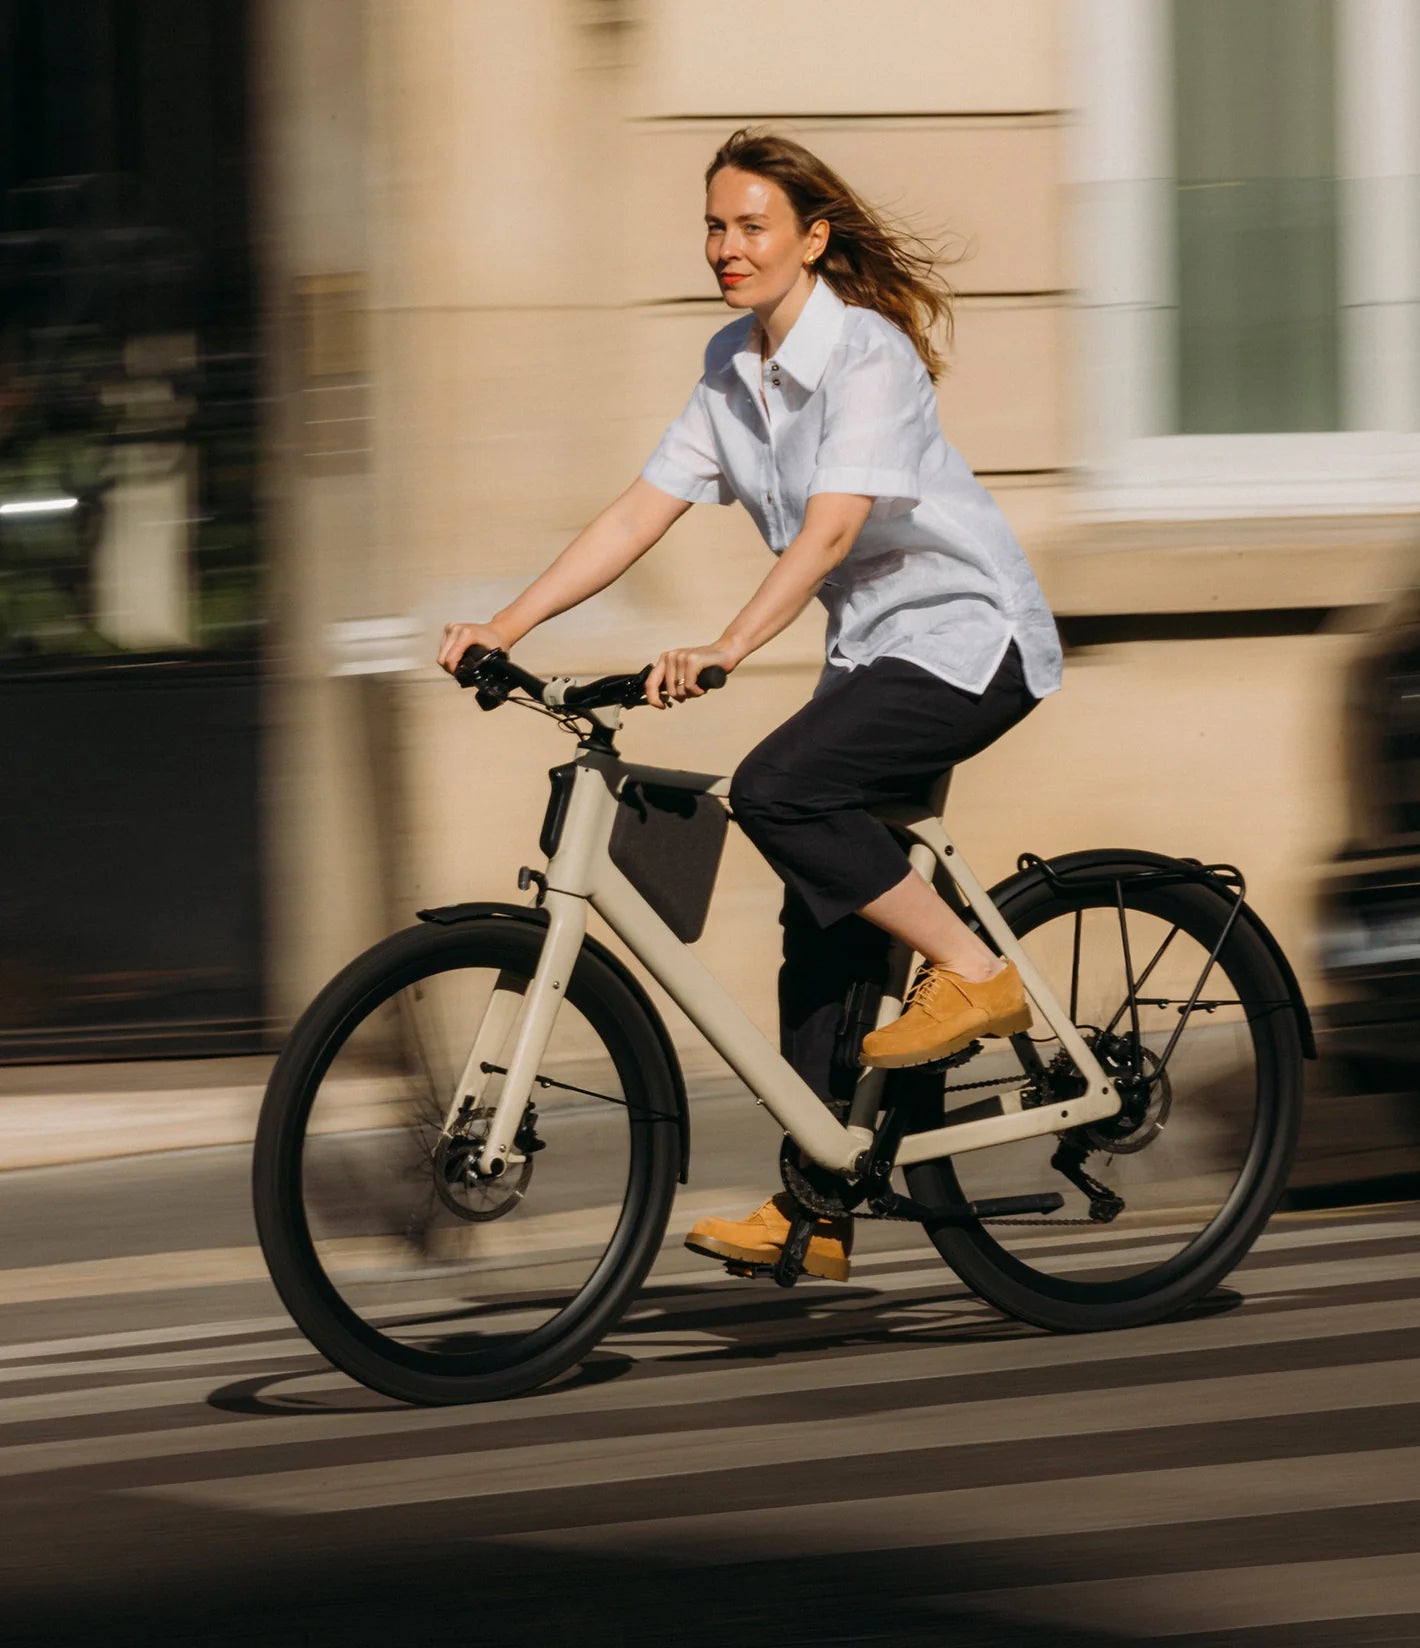 Frau fährt LEMMO Full-Suspension E-Bike in der Stadt